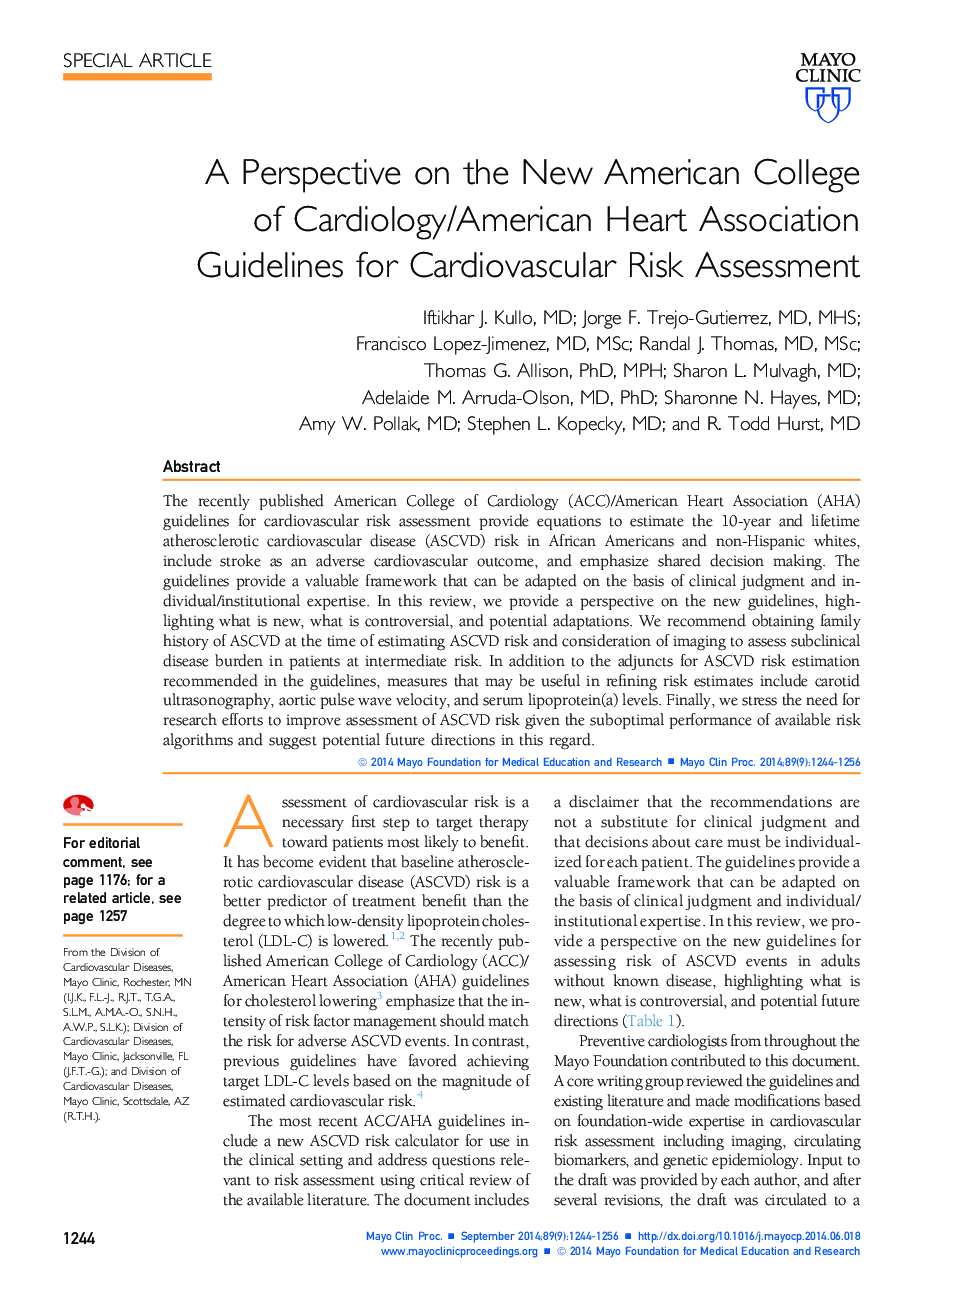 یک چشم انداز در کالج آمریکایی قلب و عروق / انجمن قلب آمریکا دستورالعمل برای ارزیابی خطر قلب و عروق 